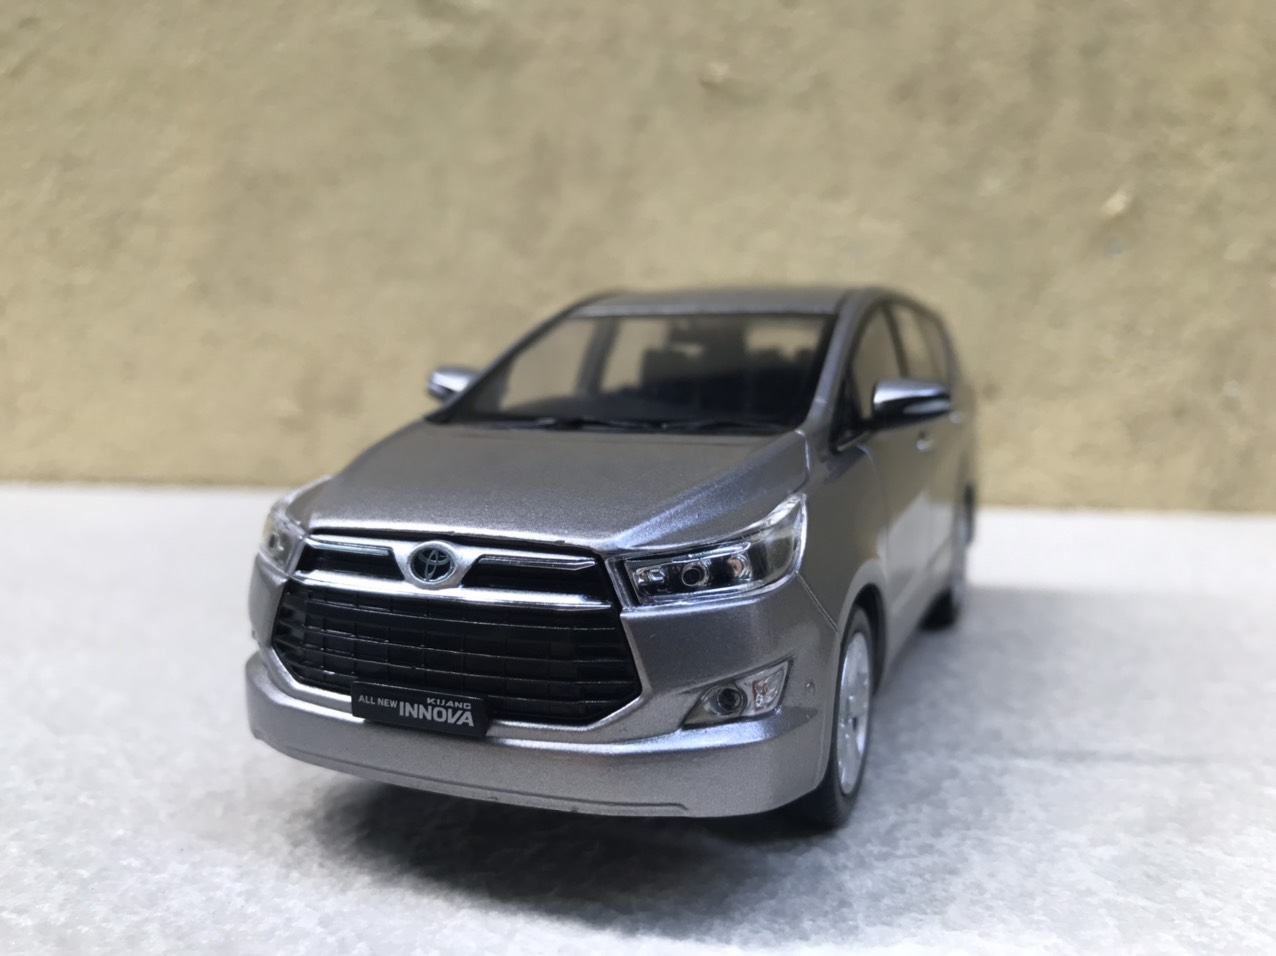 Bảng giá ô tô Toyota tháng 32022 Toyota Innova được hỗ trợ 15 triệu đồng   Báo điện tử VnMedia  Tin nóng Việt Nam và thế giới